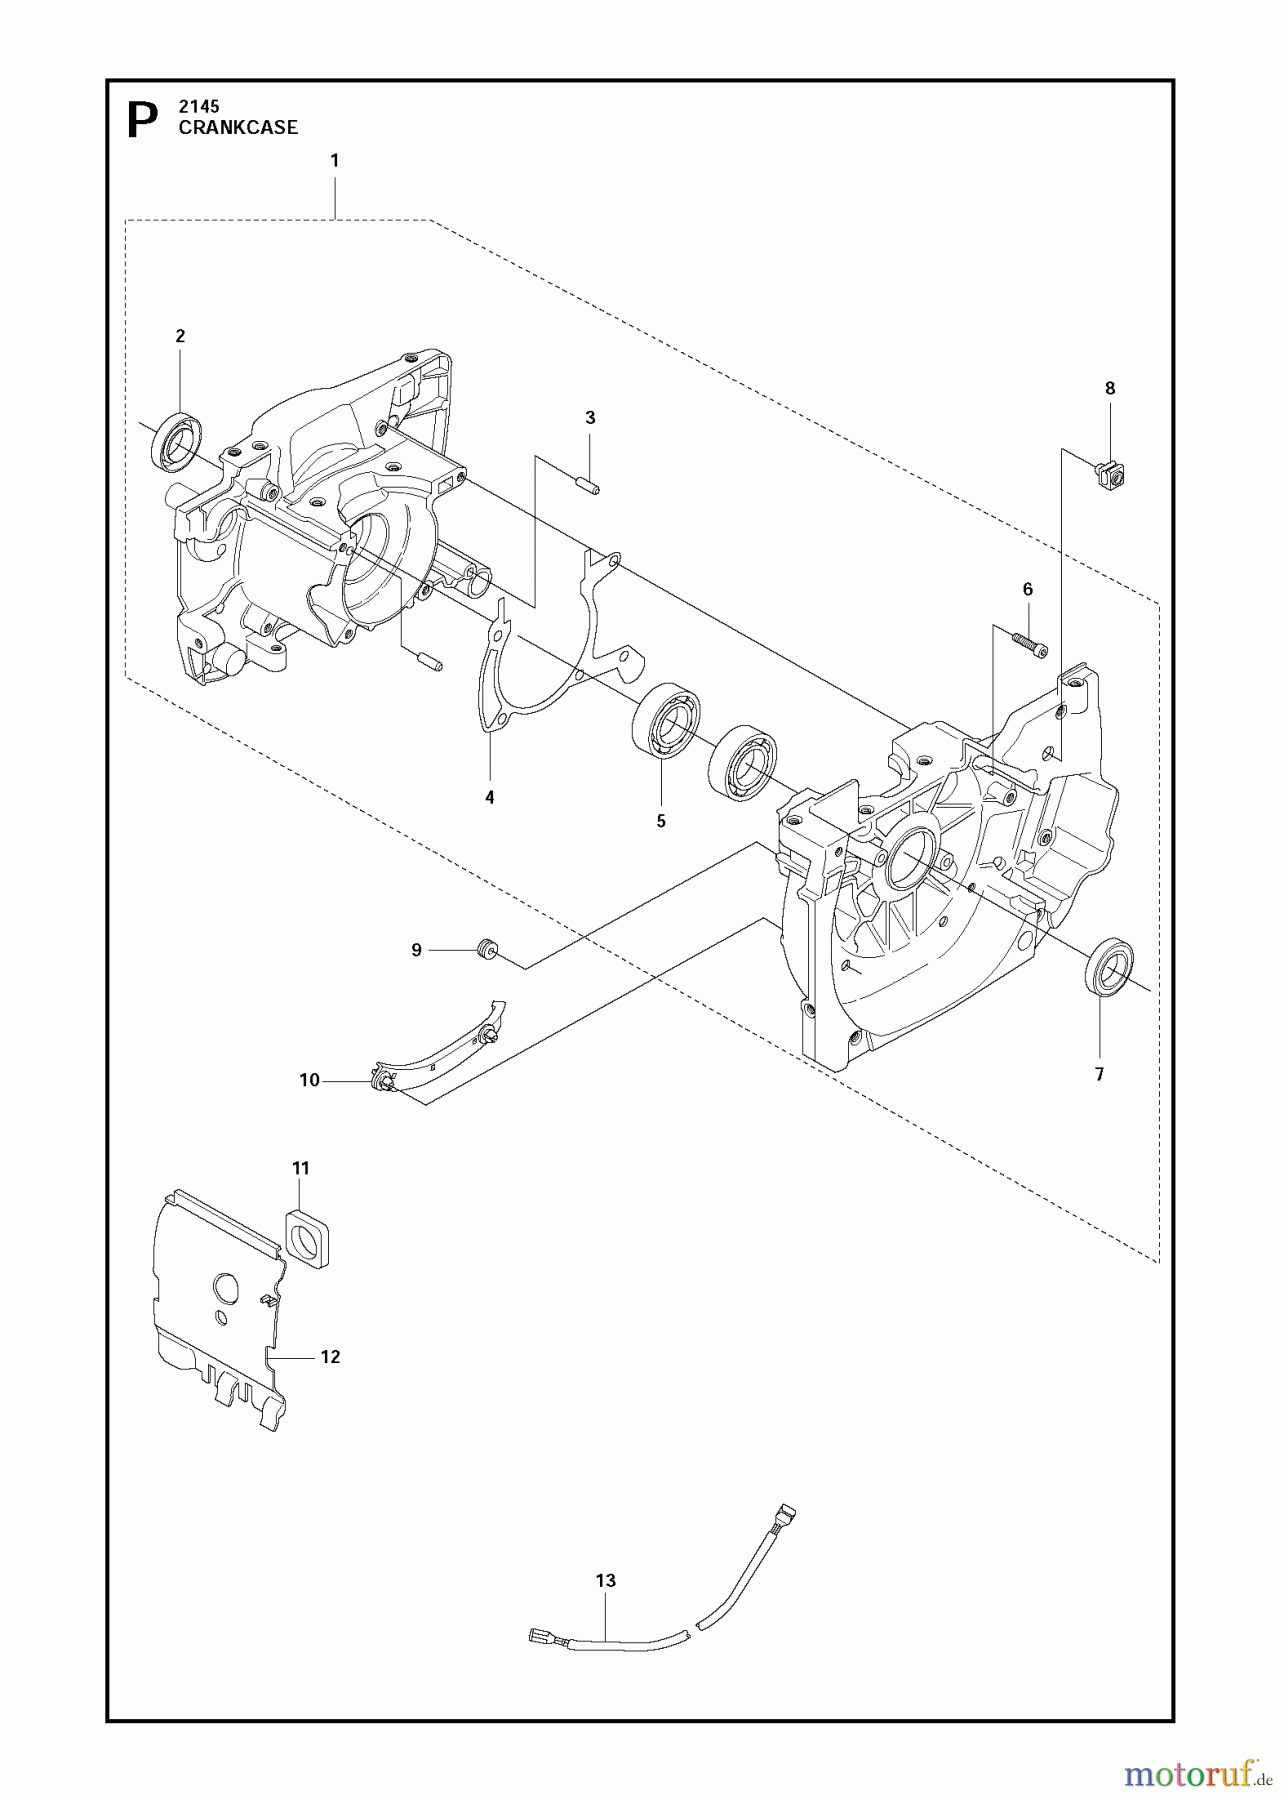  Jonsered Motorsensen, Trimmer FC2145S - Jonsered String/Brush Trimmer (2011-02) CRANKCASE